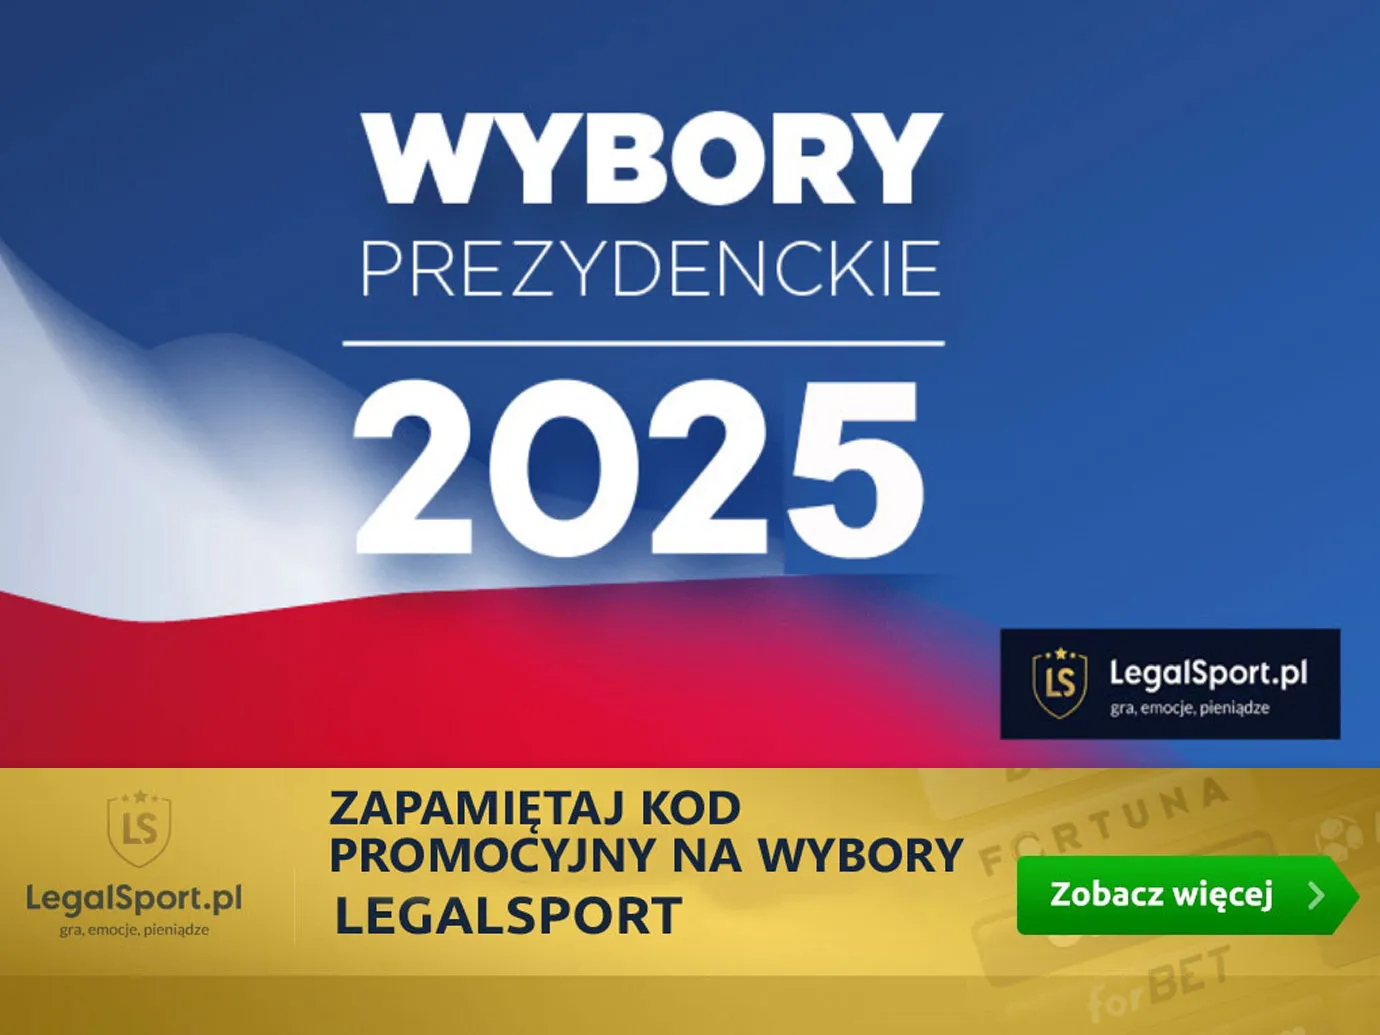 Wybory prezydenckie w Polsce 2025 - zakłady bukmacherskie